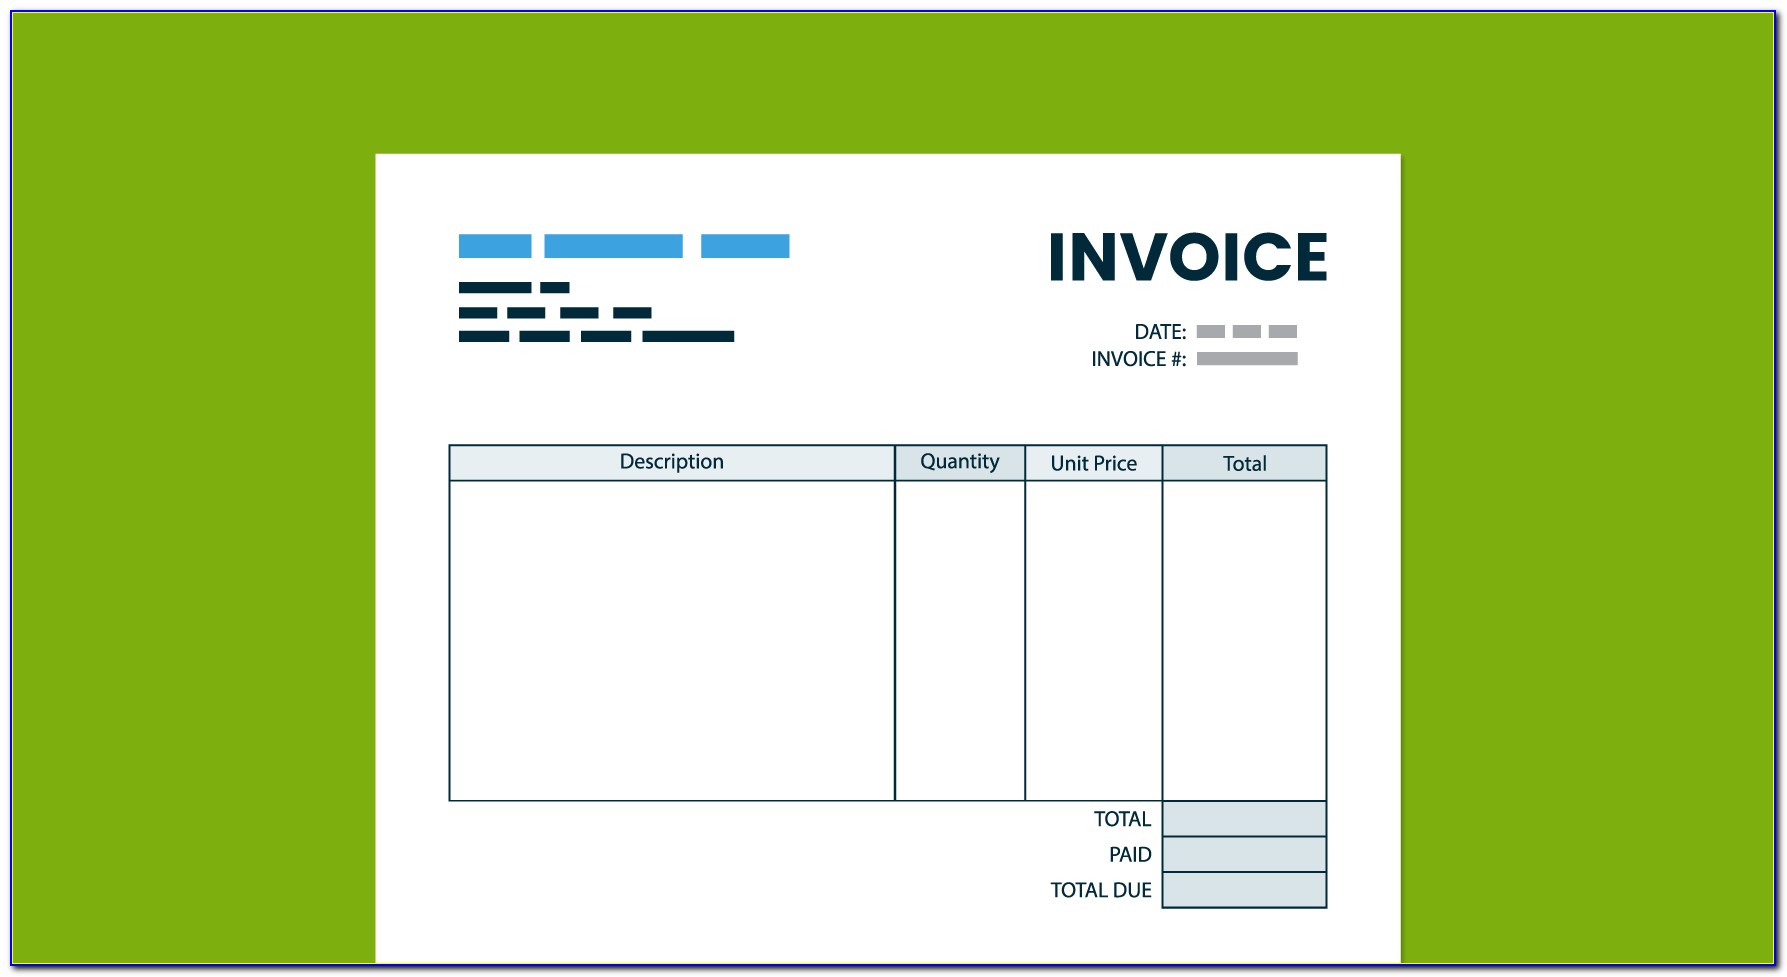 Sample Invoice Interior Design Services